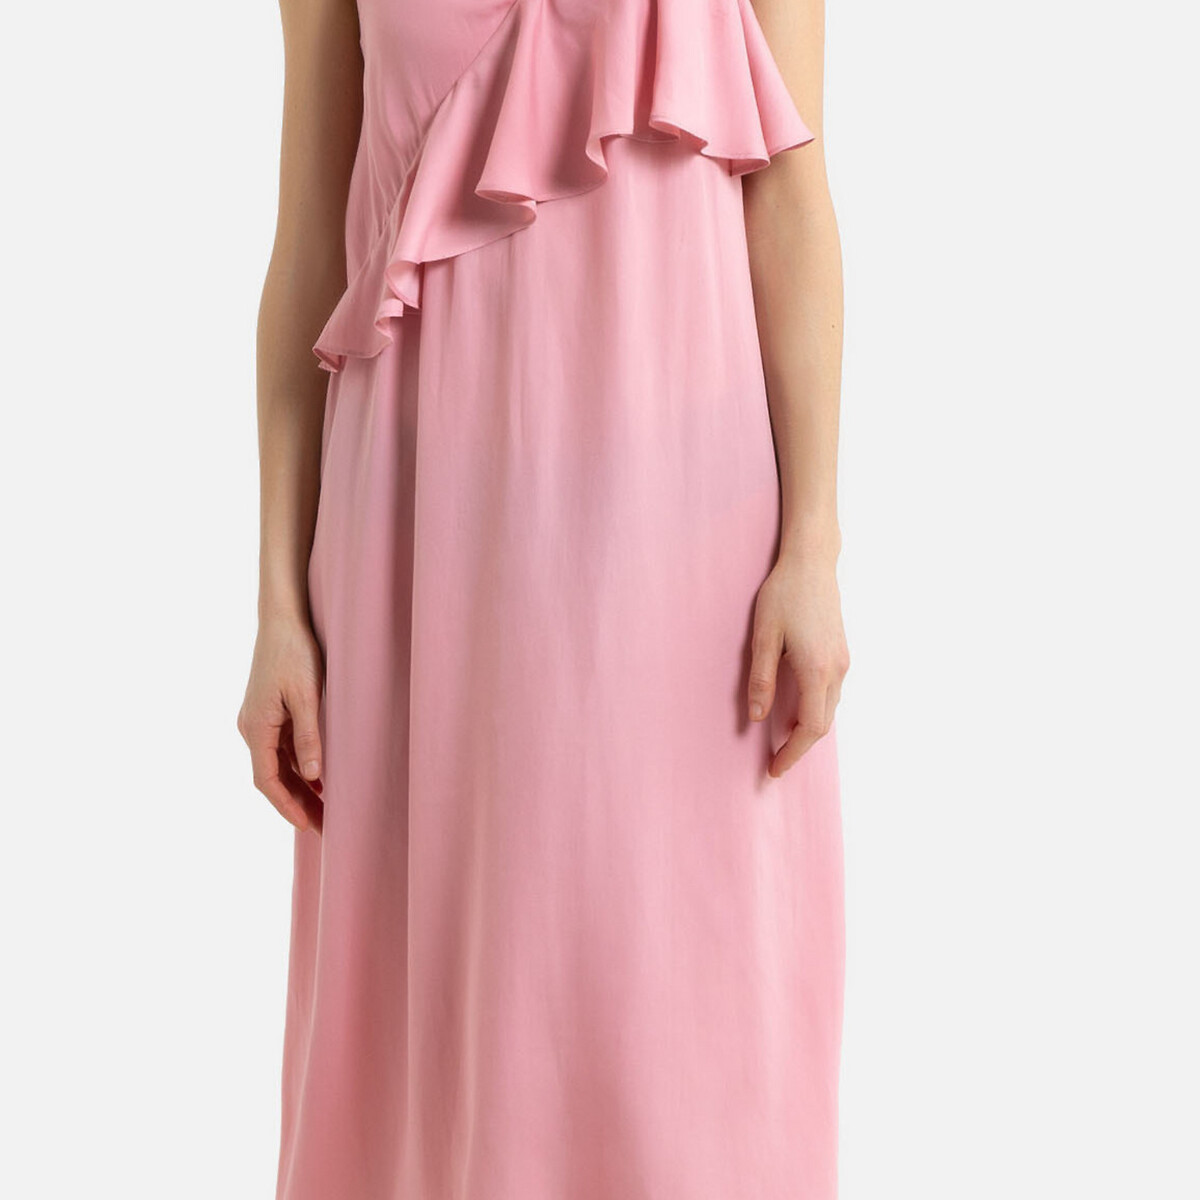 Платье La Redoute Длинное на тонких бретелях с воланом 34 (FR) - 40 (RUS) розовый, размер 34 (FR) - 40 (RUS) Длинное на тонких бретелях с воланом 34 (FR) - 40 (RUS) розовый - фото 4